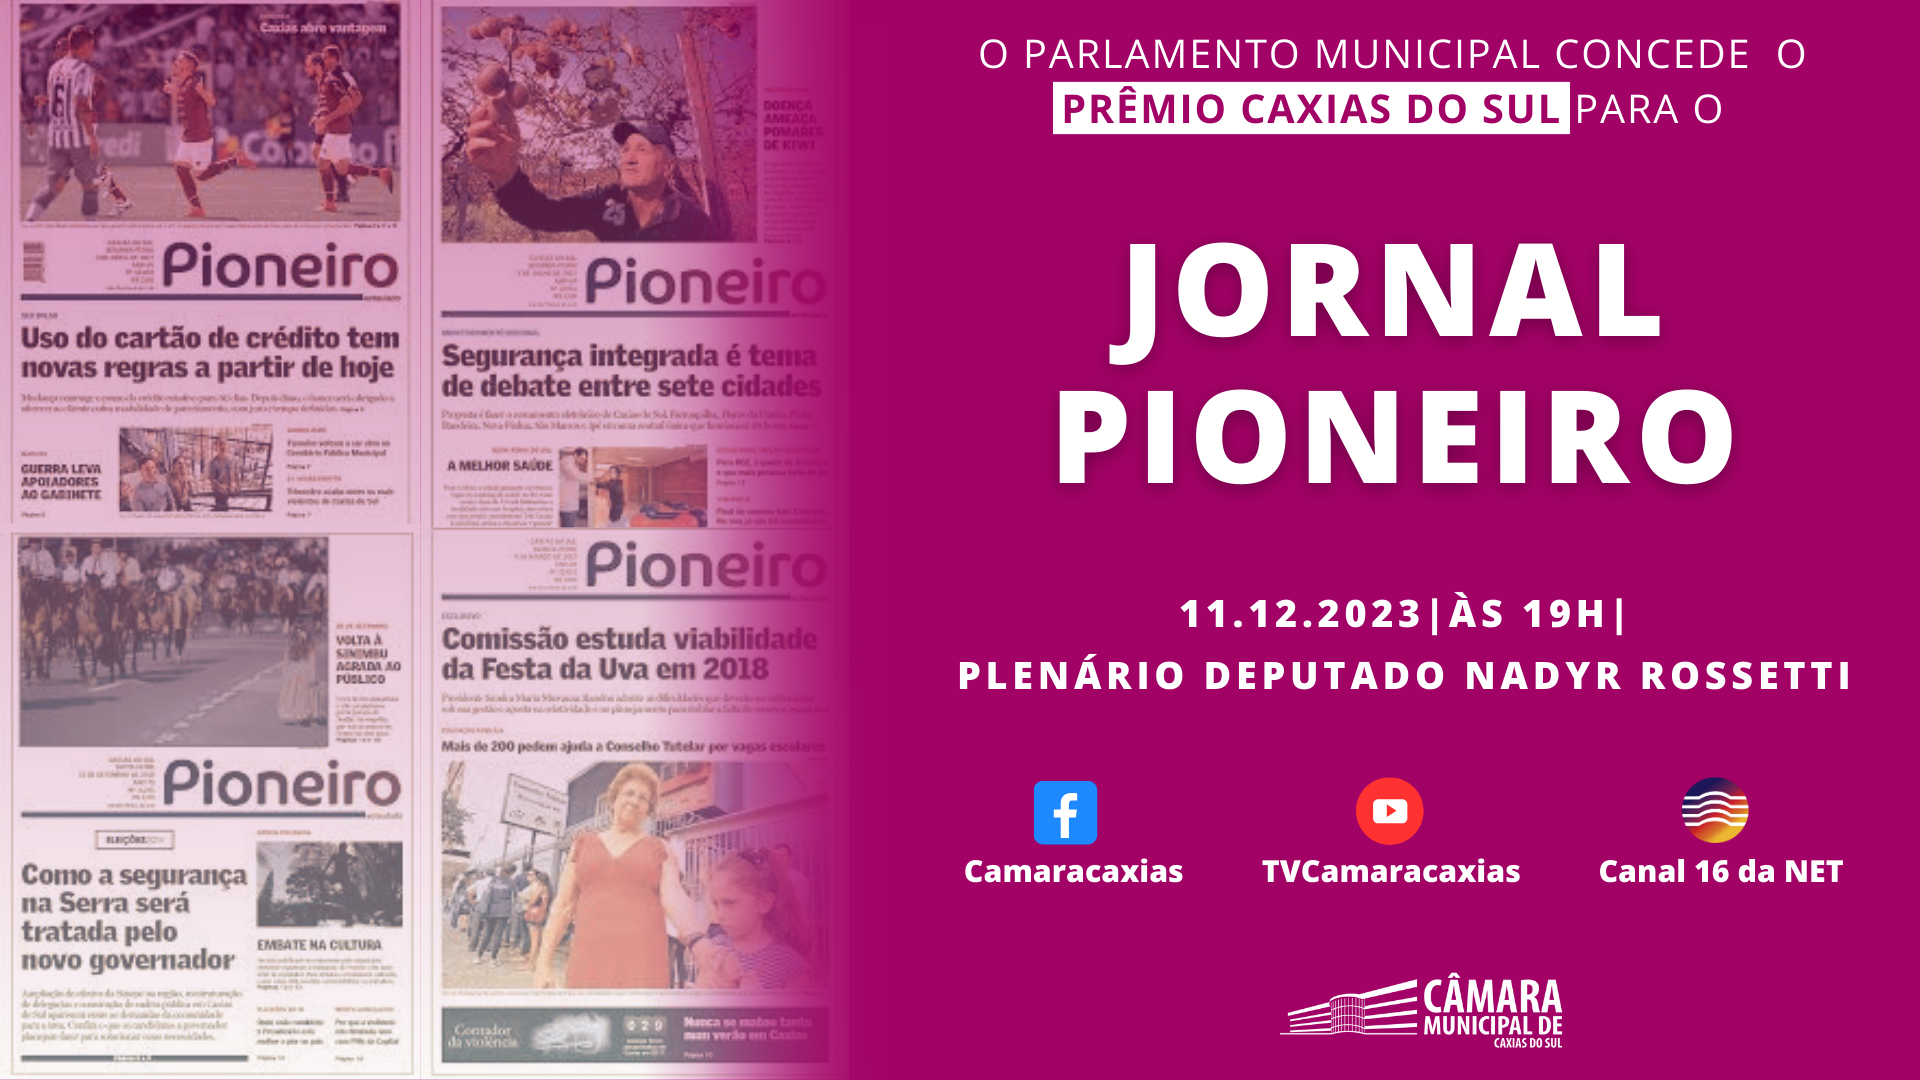 Jornal Pioneiro será agraciado com o Prêmio Caxias do Sul nesta segunda-feira